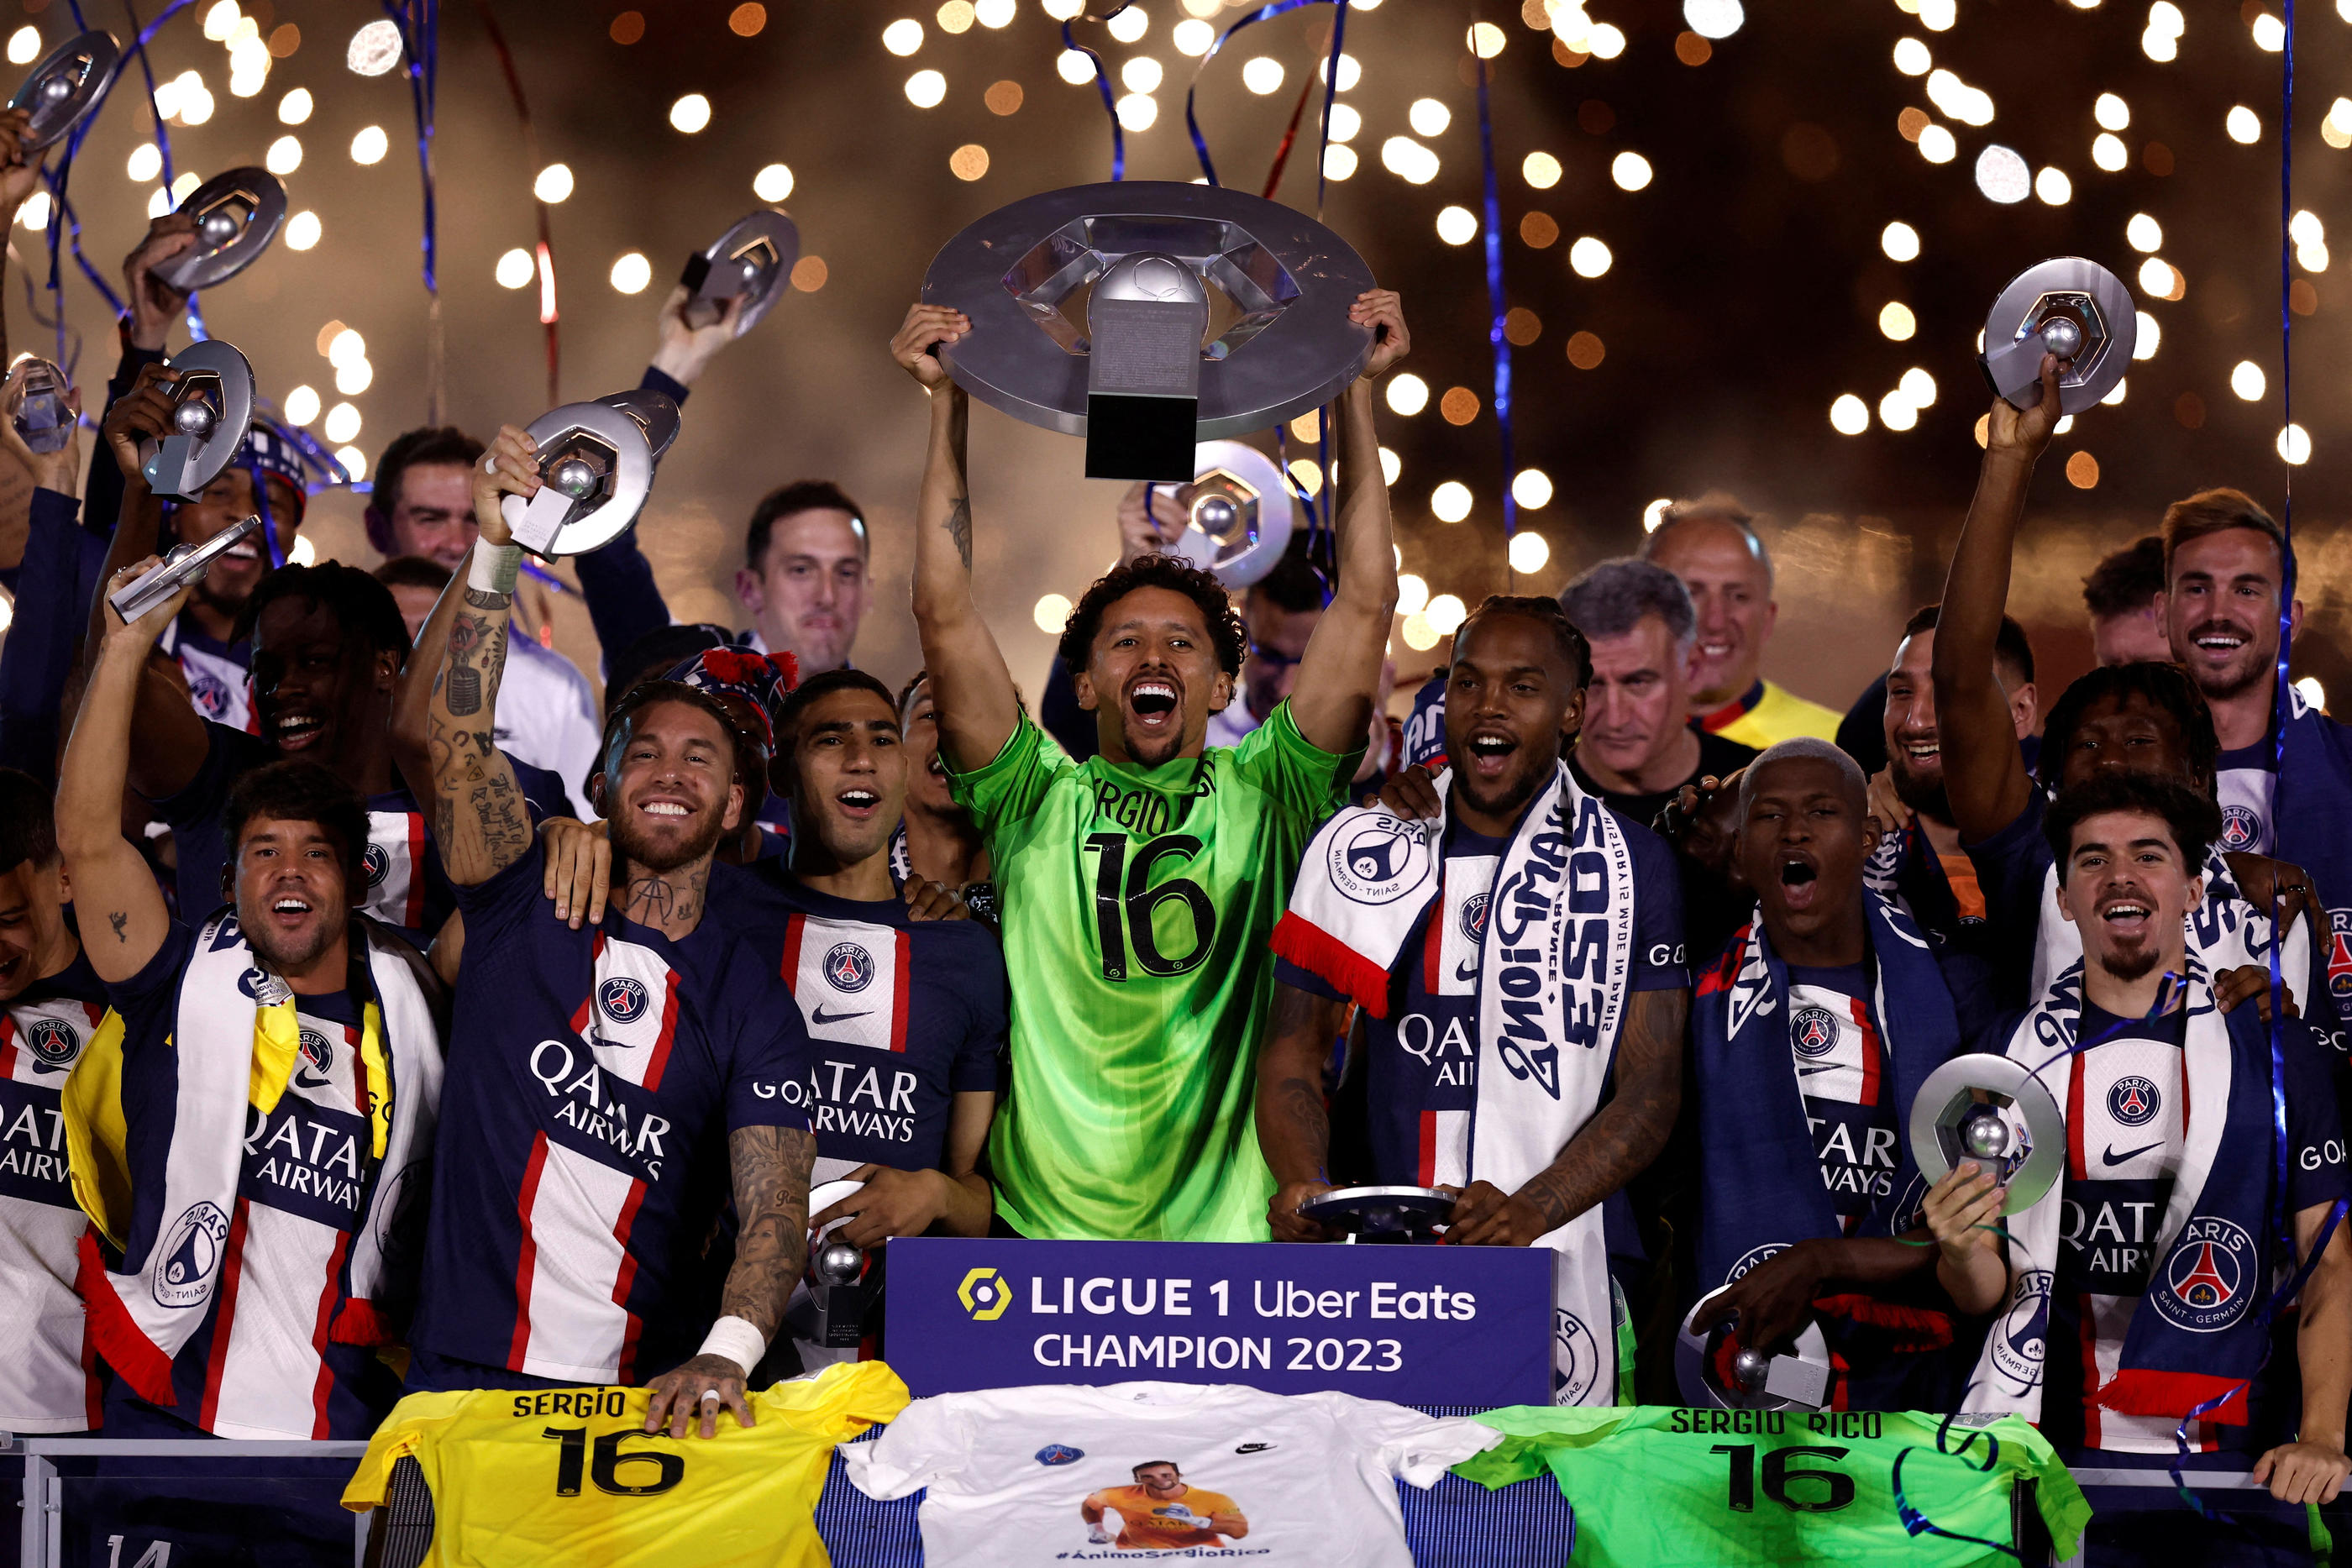 Le PSG a conclu sa saison 2022-2023 par une défaite à Clermont ce samedi avant de soulever son trophée de champion de Ligue 1. REUTERS/Benoit Tessier